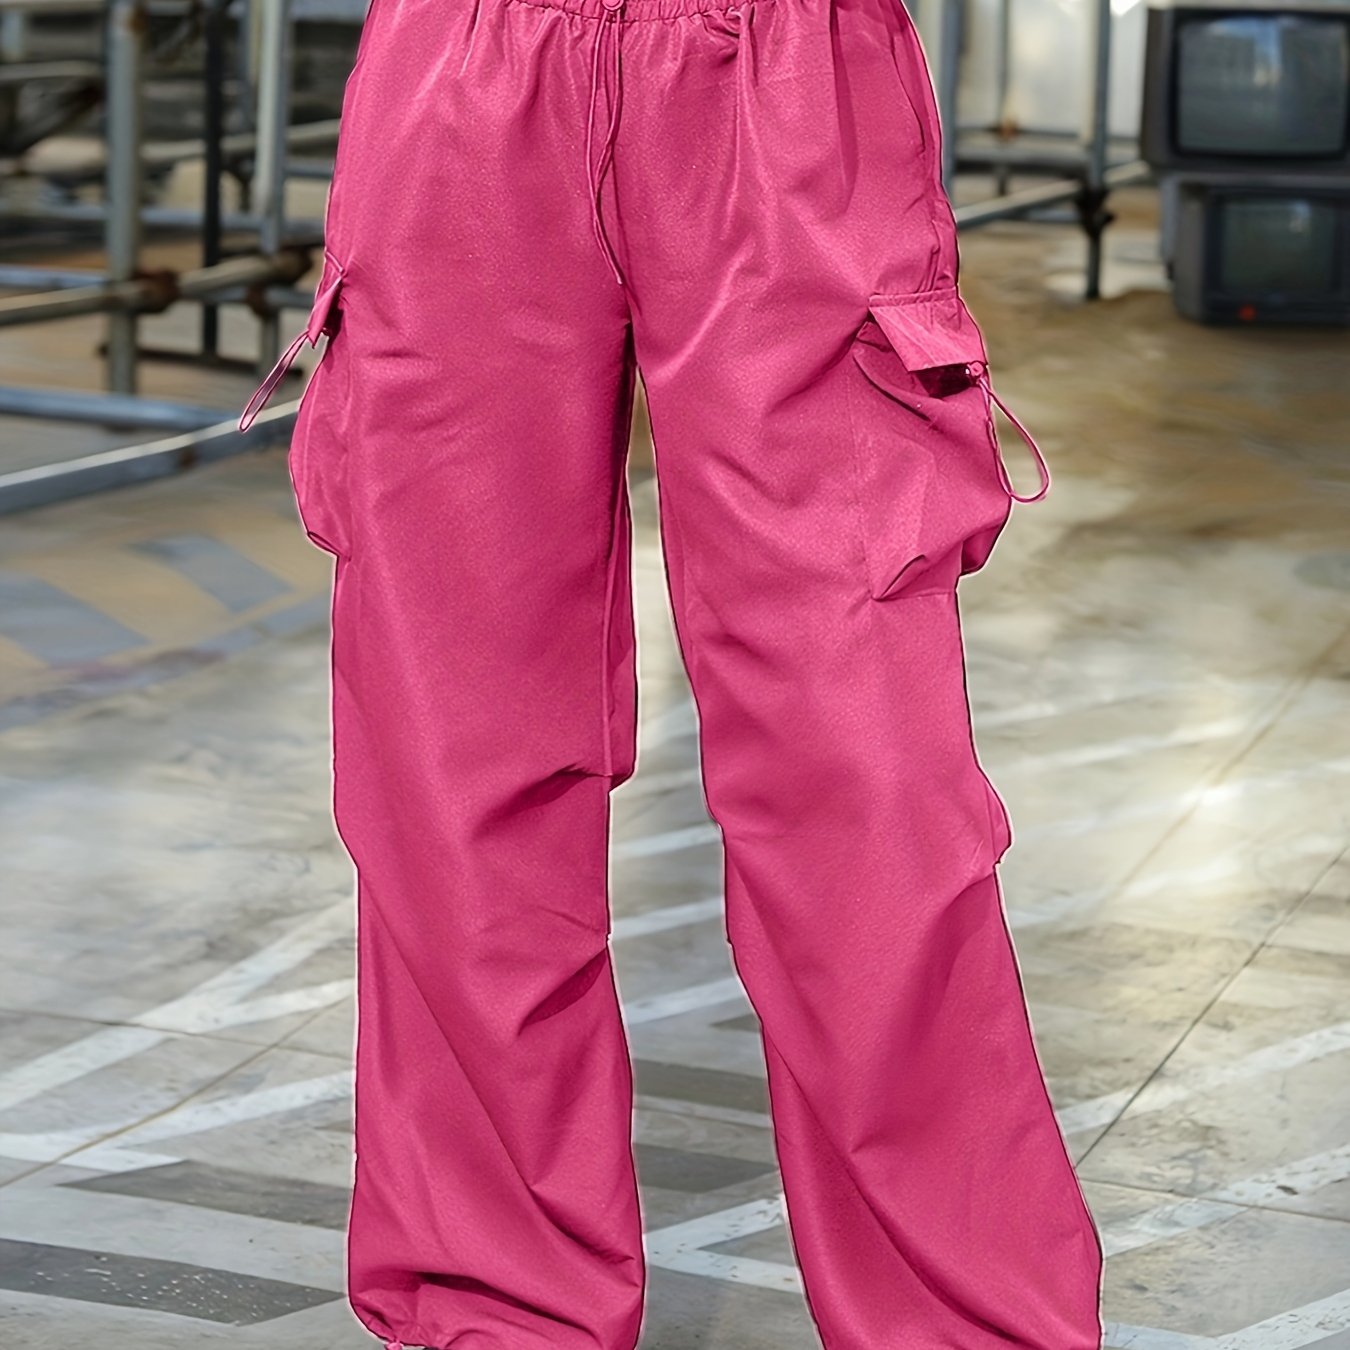 Hot pink cargo pants… Um yes please!!💕💕 #targetstyles #cargopants  #targetteacher #affordablefashion #ltkunder20 #ltkunder30 #ltk…